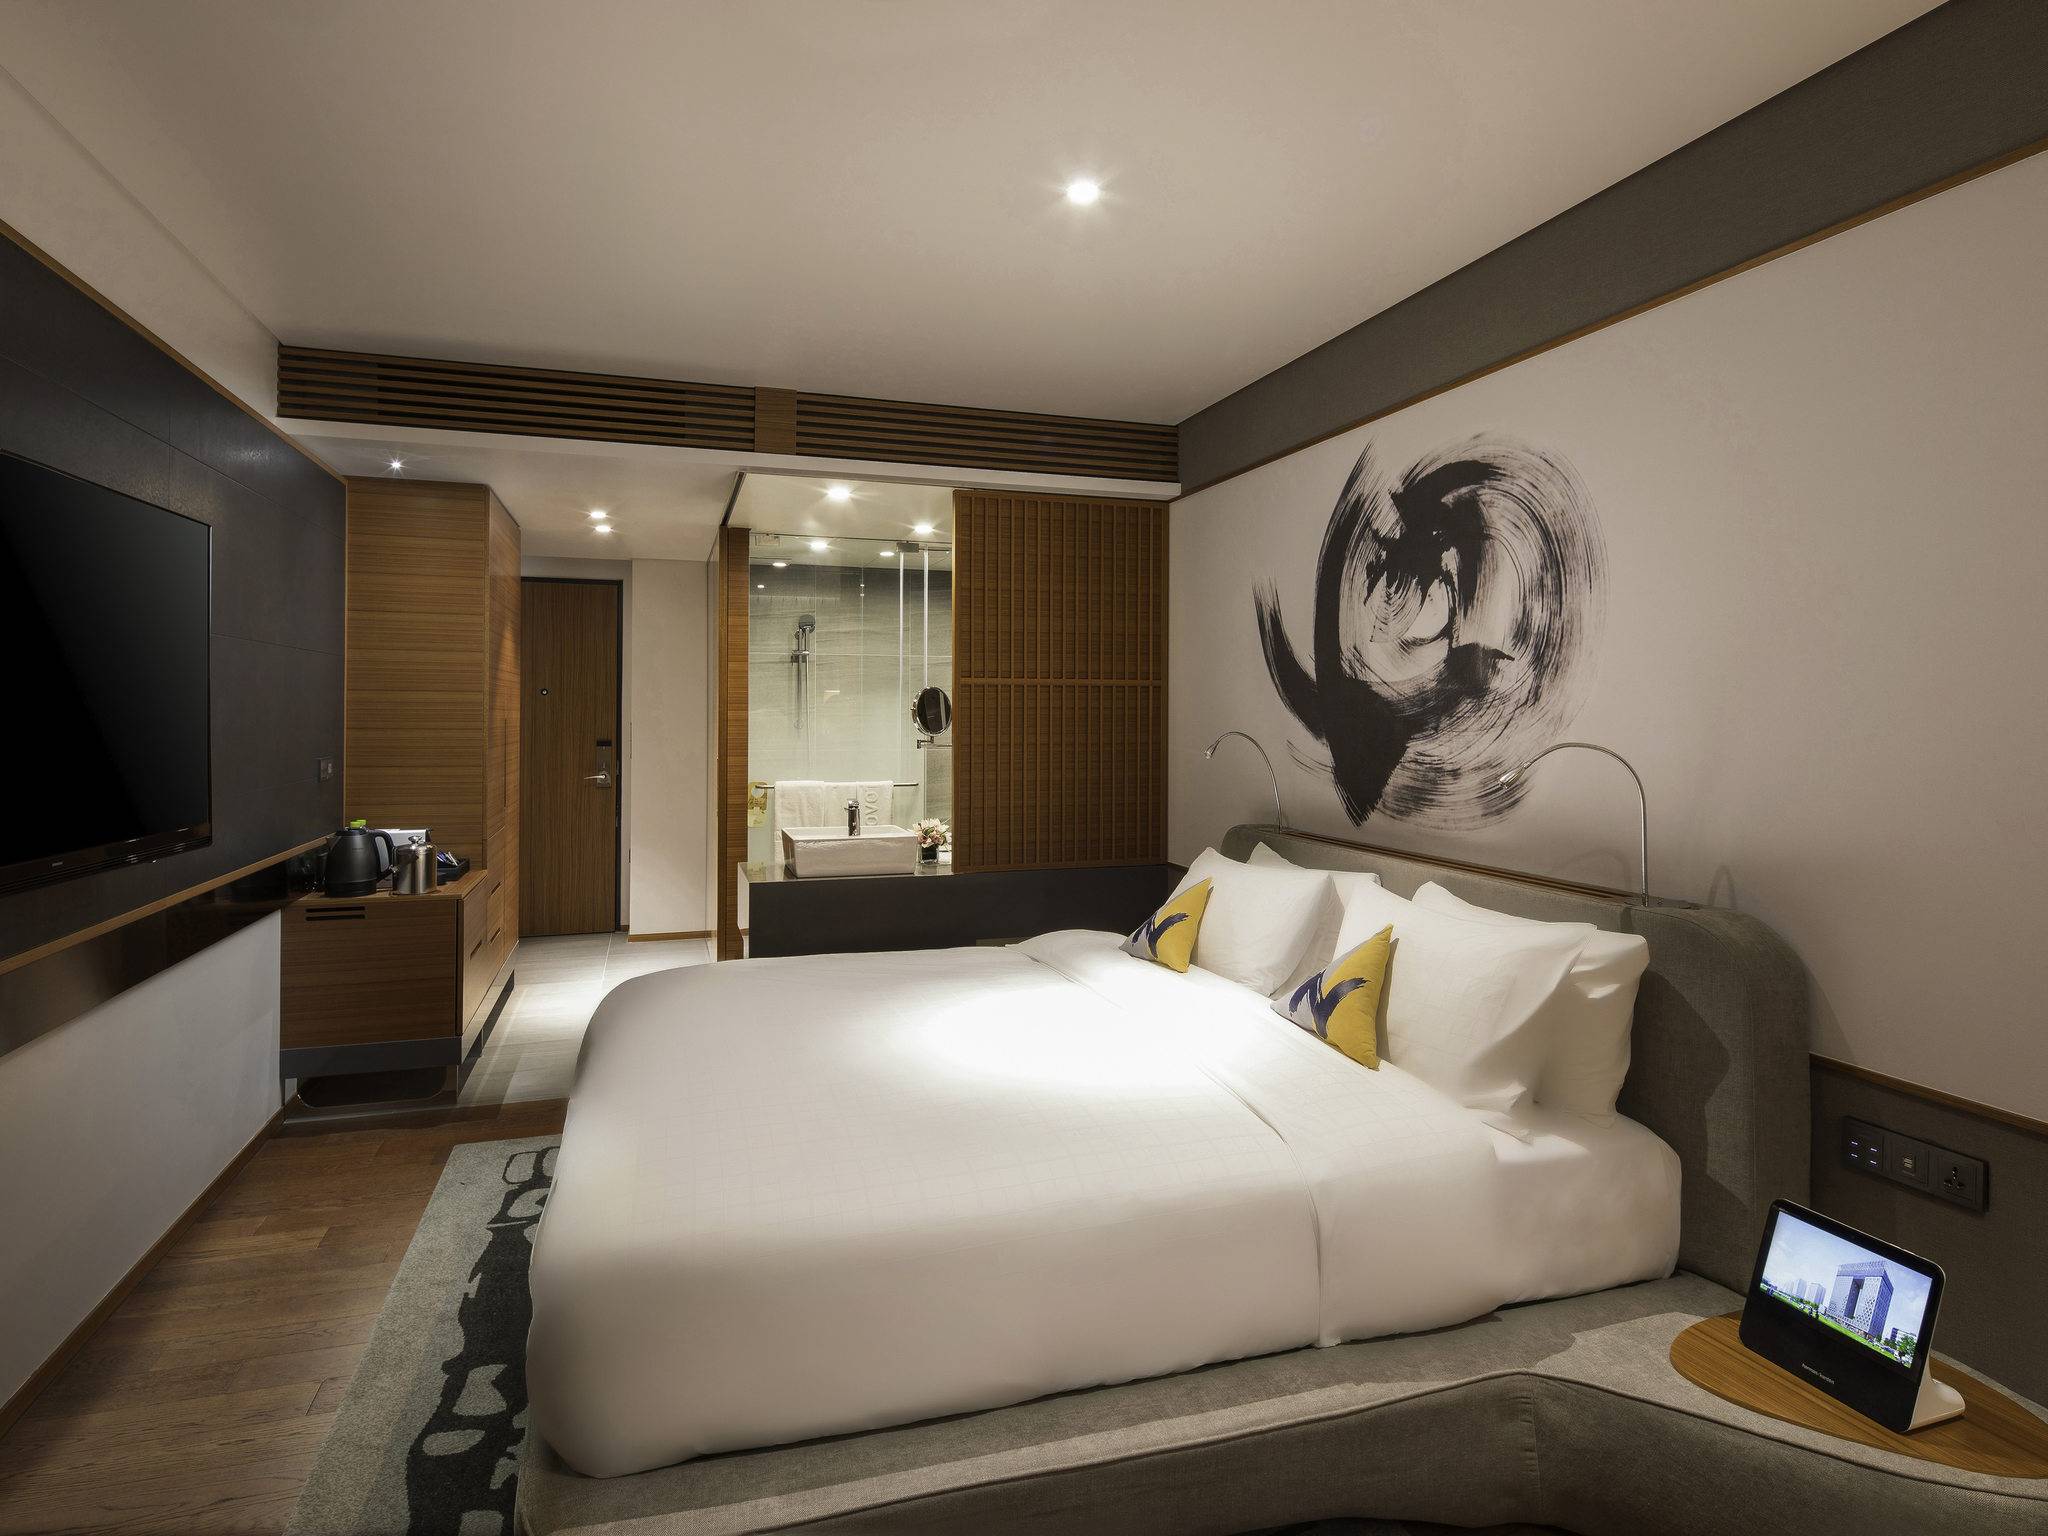 2019首爾新酒店 標準客房十分闊落。